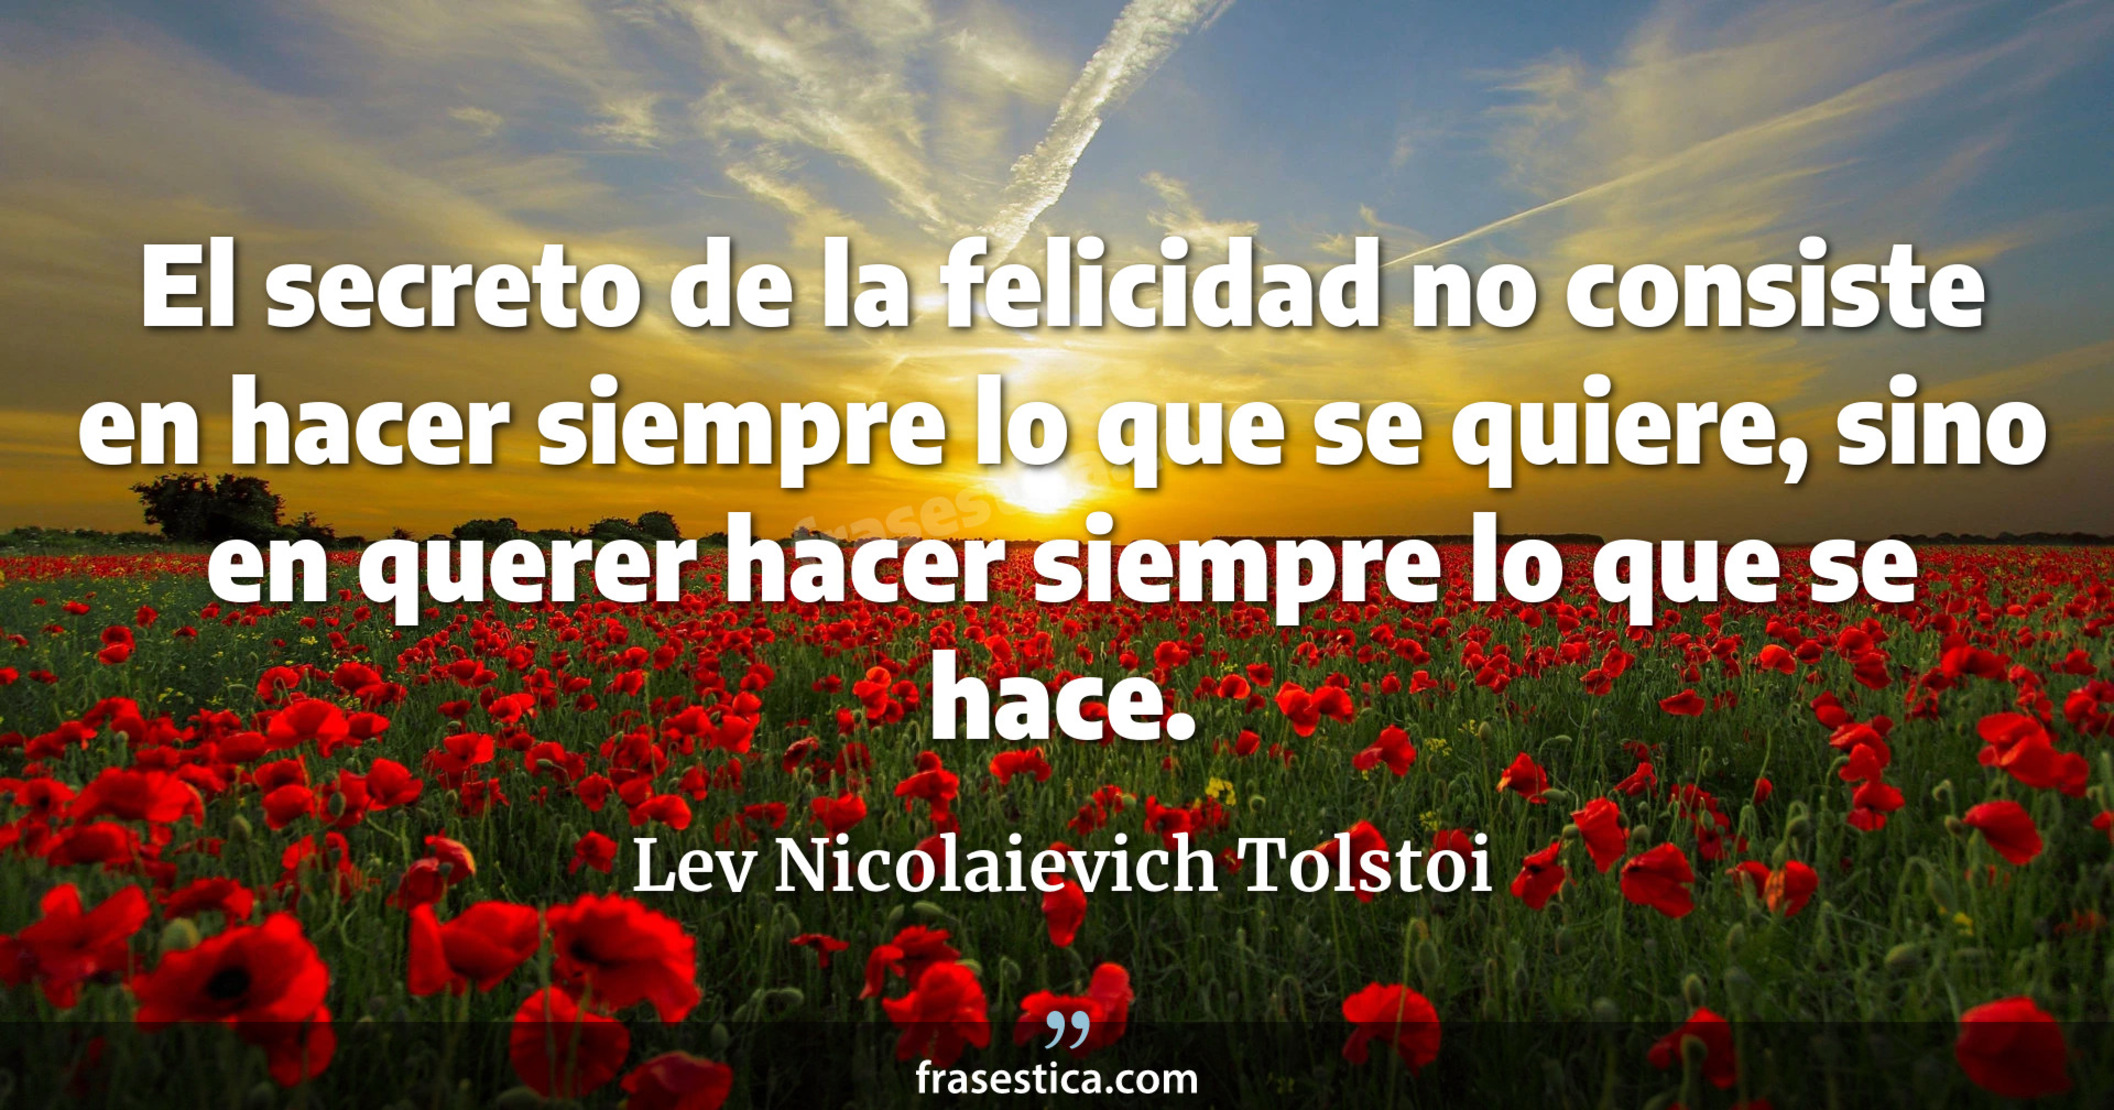 El secreto de la felicidad no consiste en hacer siempre lo que se quiere, sino en querer hacer siempre lo que se hace. - Lev Nicolaievich Tolstoi